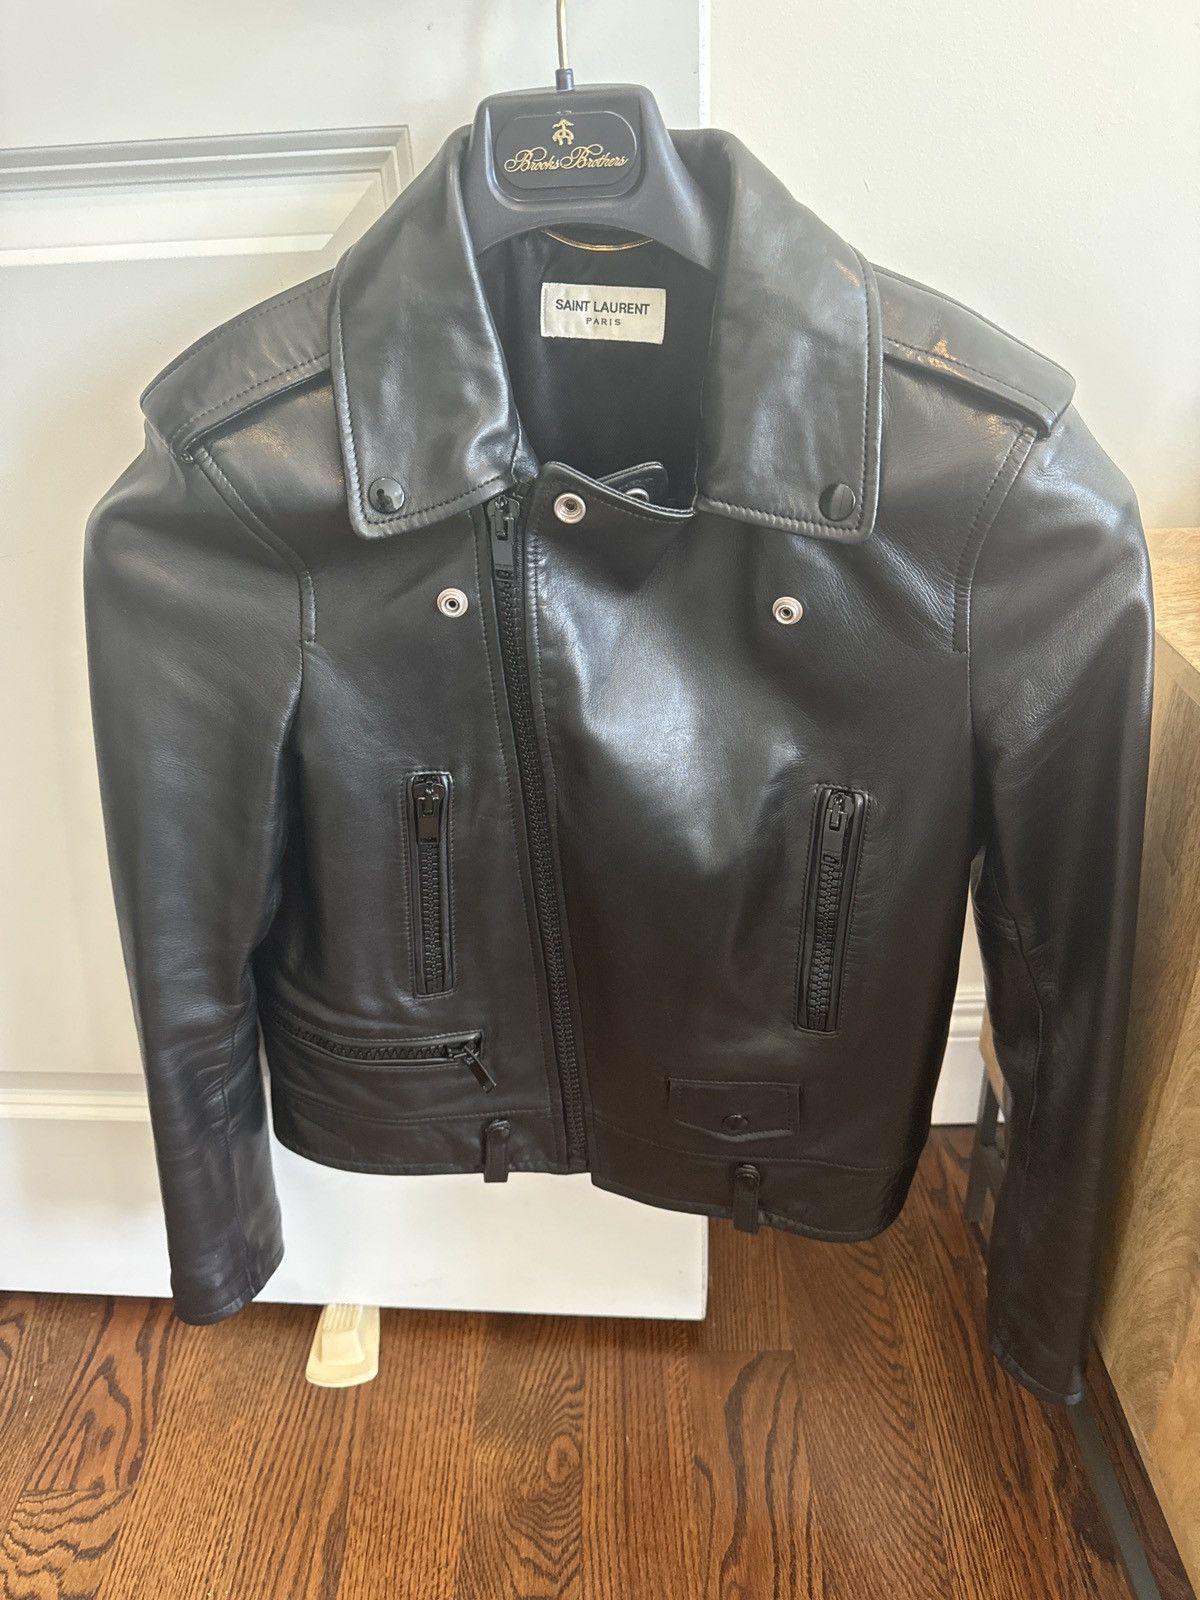 Saint Laurent Paris Black Leather Moto Jacket Size M / US 6-8 / IT 42-44 - 6 Thumbnail